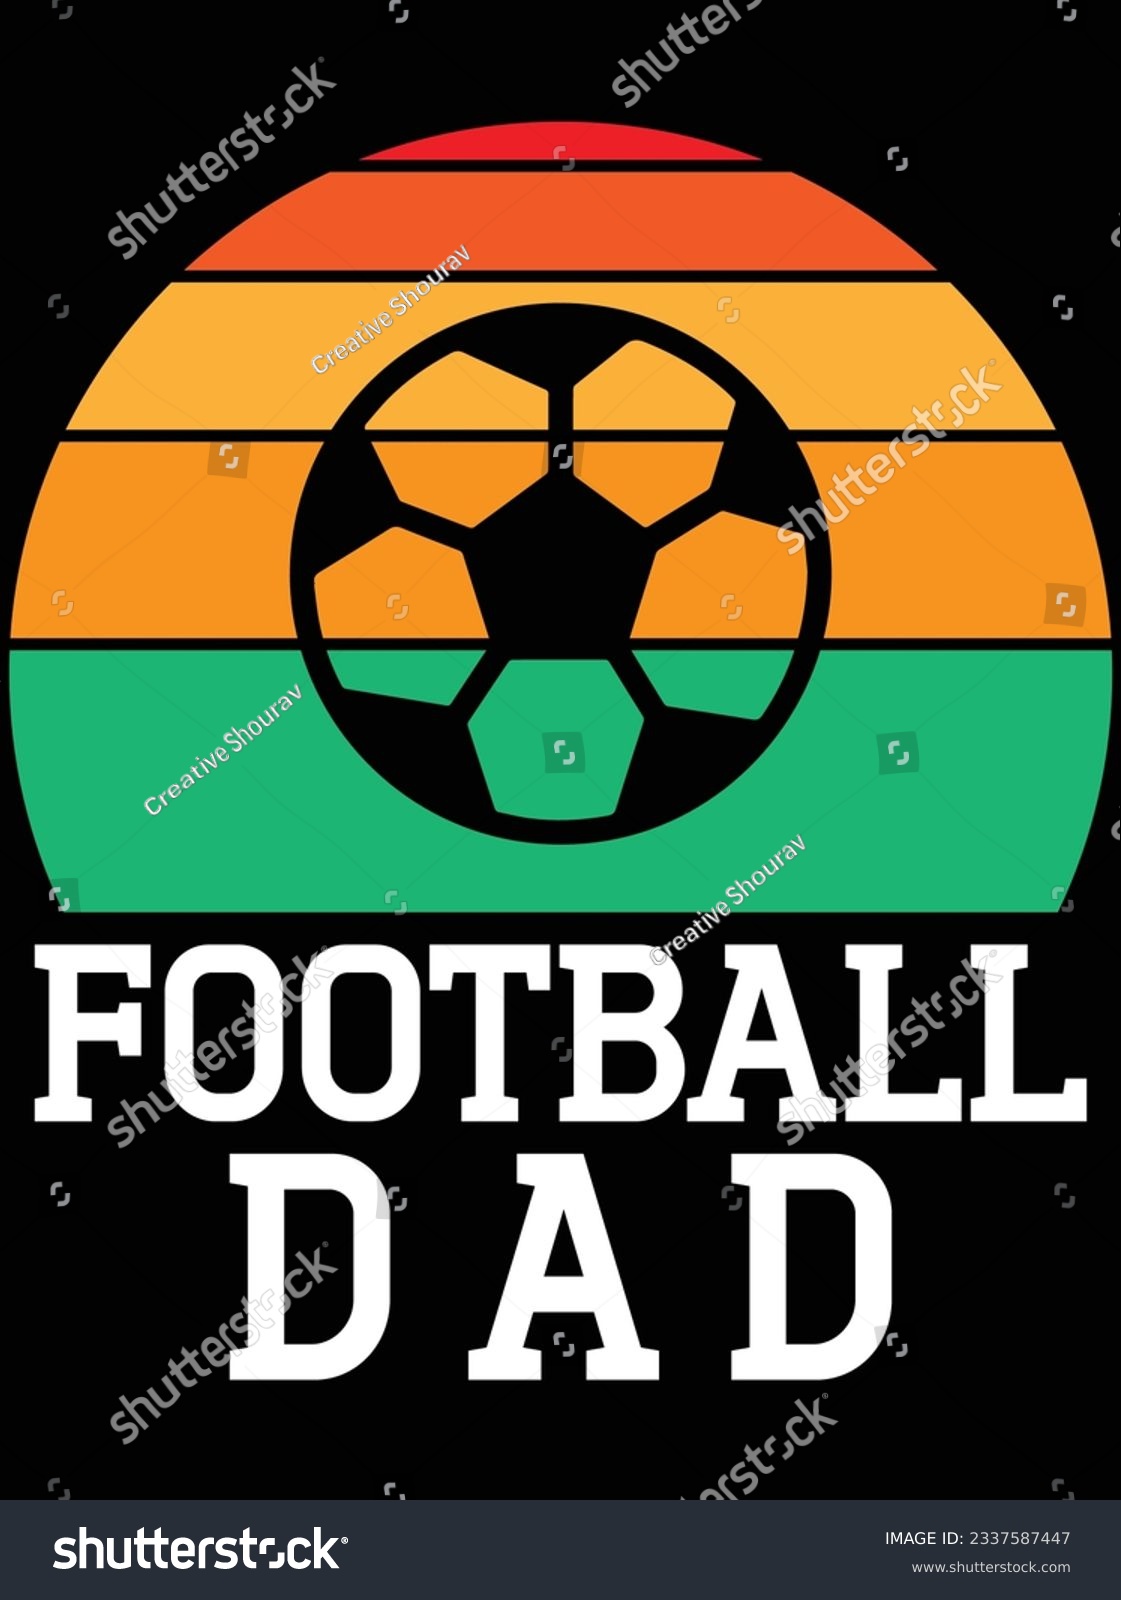 SVG of Football dad vector art design, eps file. design file for t-shirt. SVG, EPS cuttable design file svg